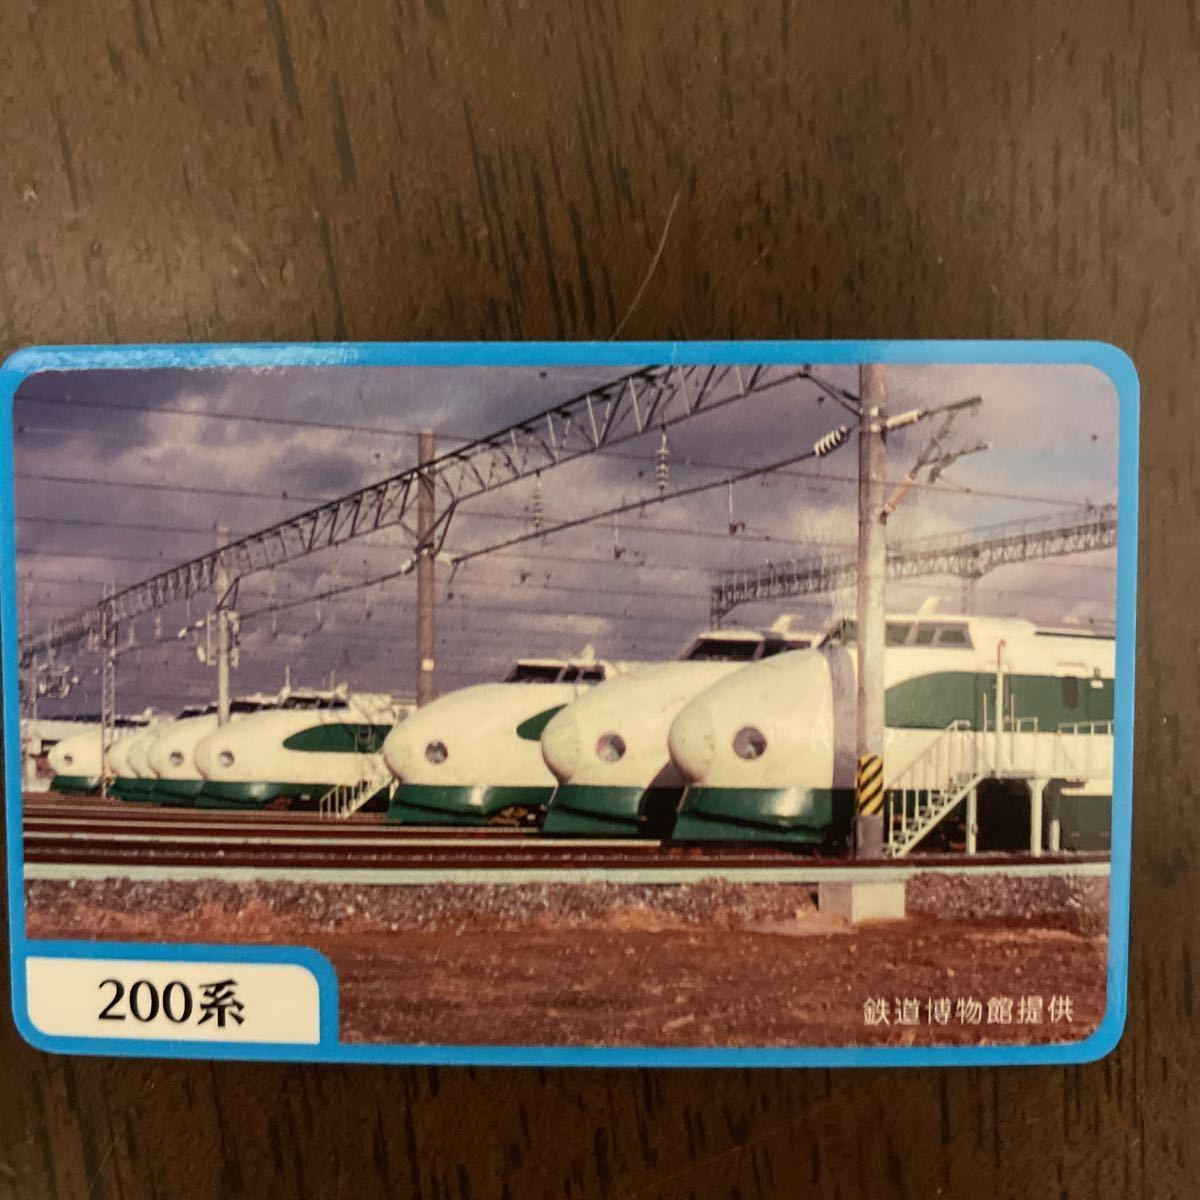 【レア】与野駅開業110周年記念 200系新幹線 駅カード トレインカード 電車カード 鉄カードの画像1